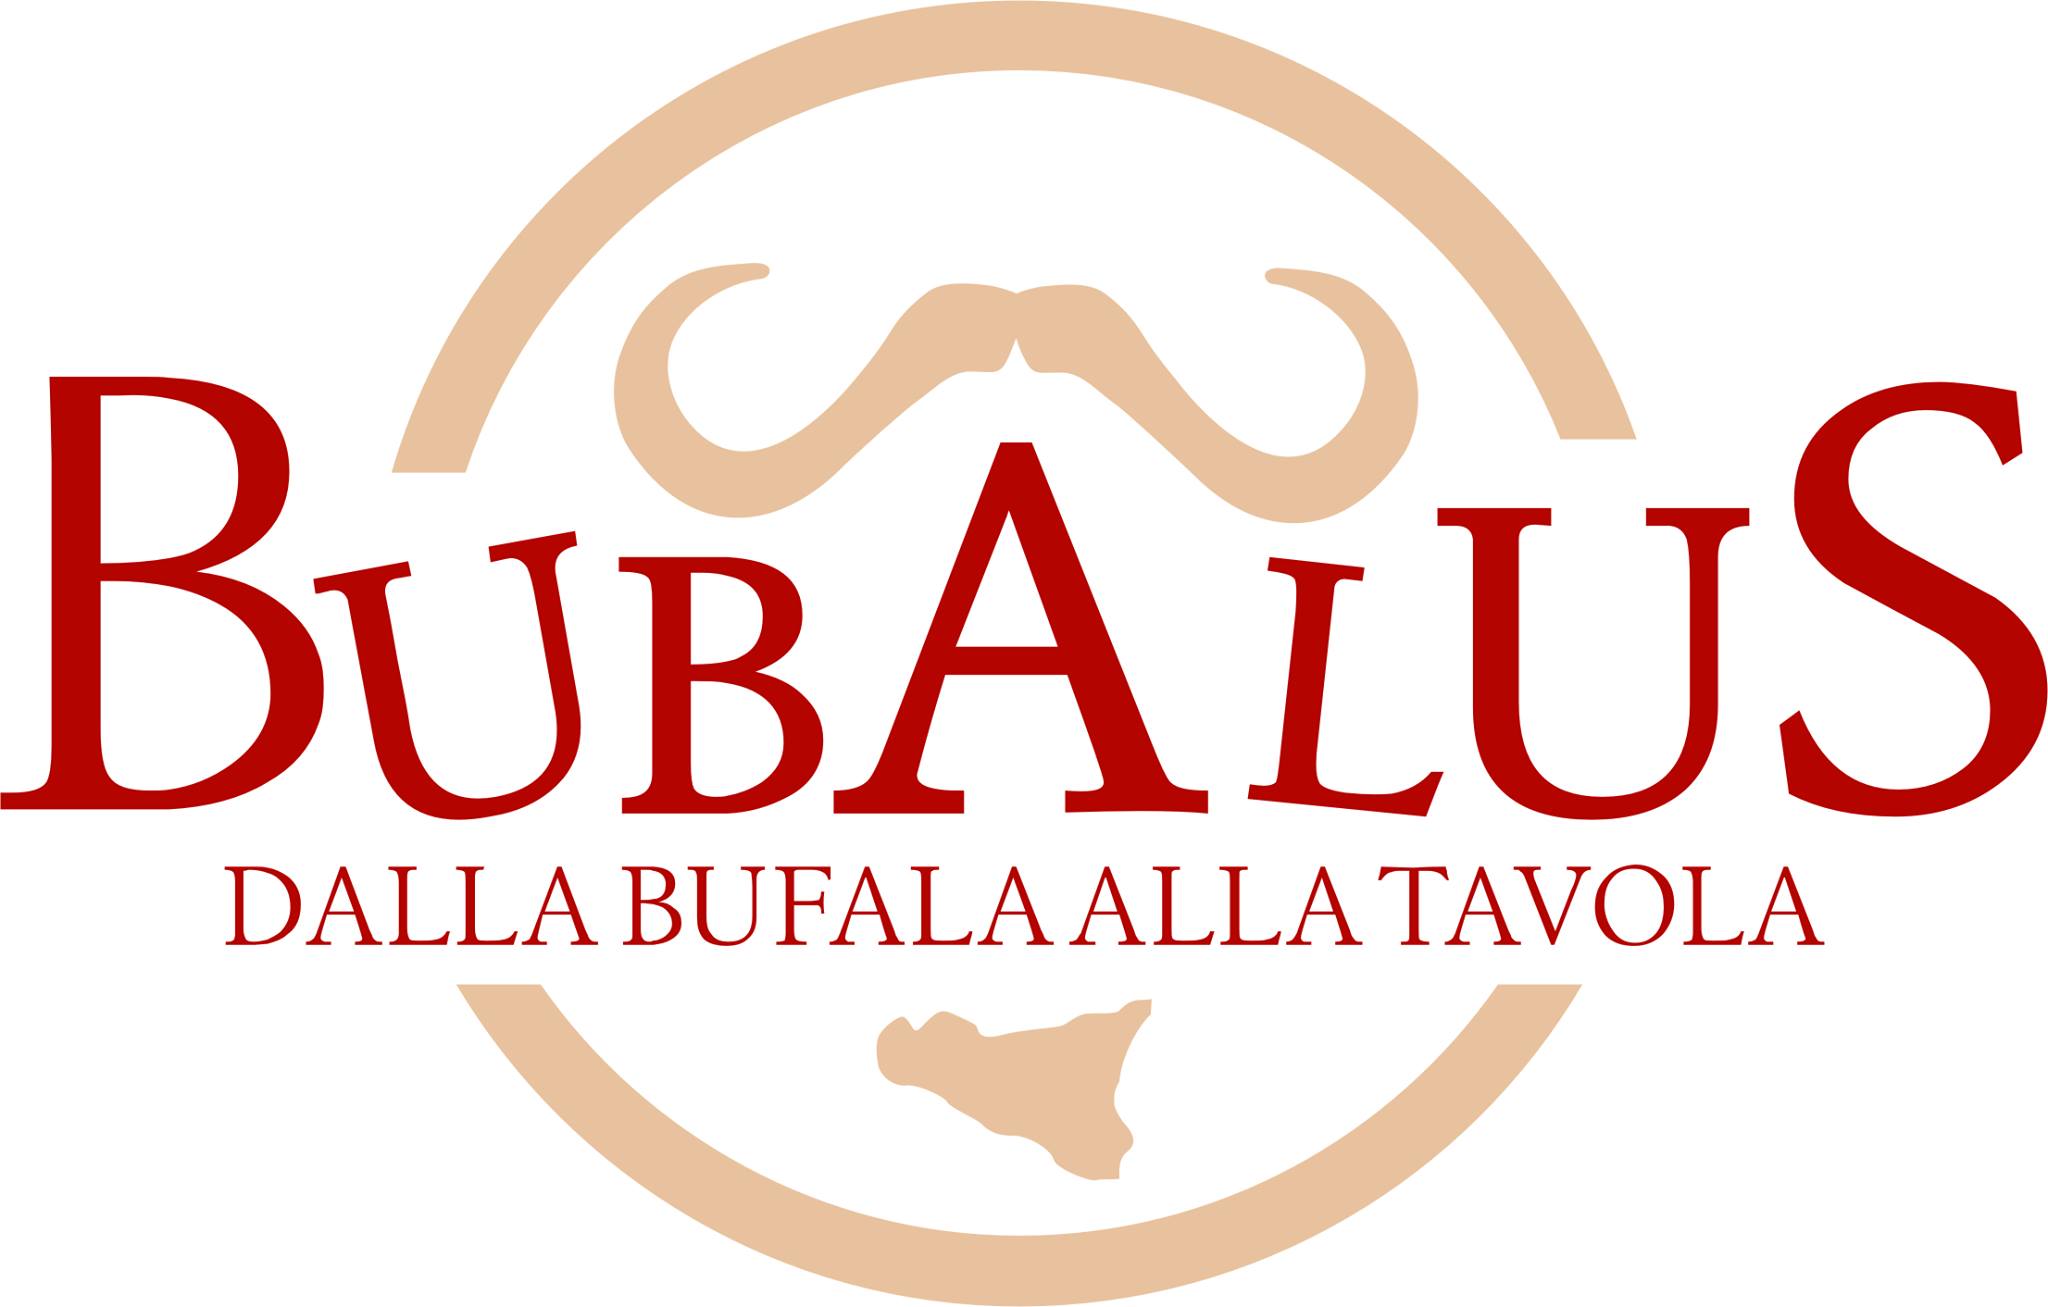 Allevamento_bufali SOCIETA' AGRICOLA BUBALUS ragusa_logo_grande